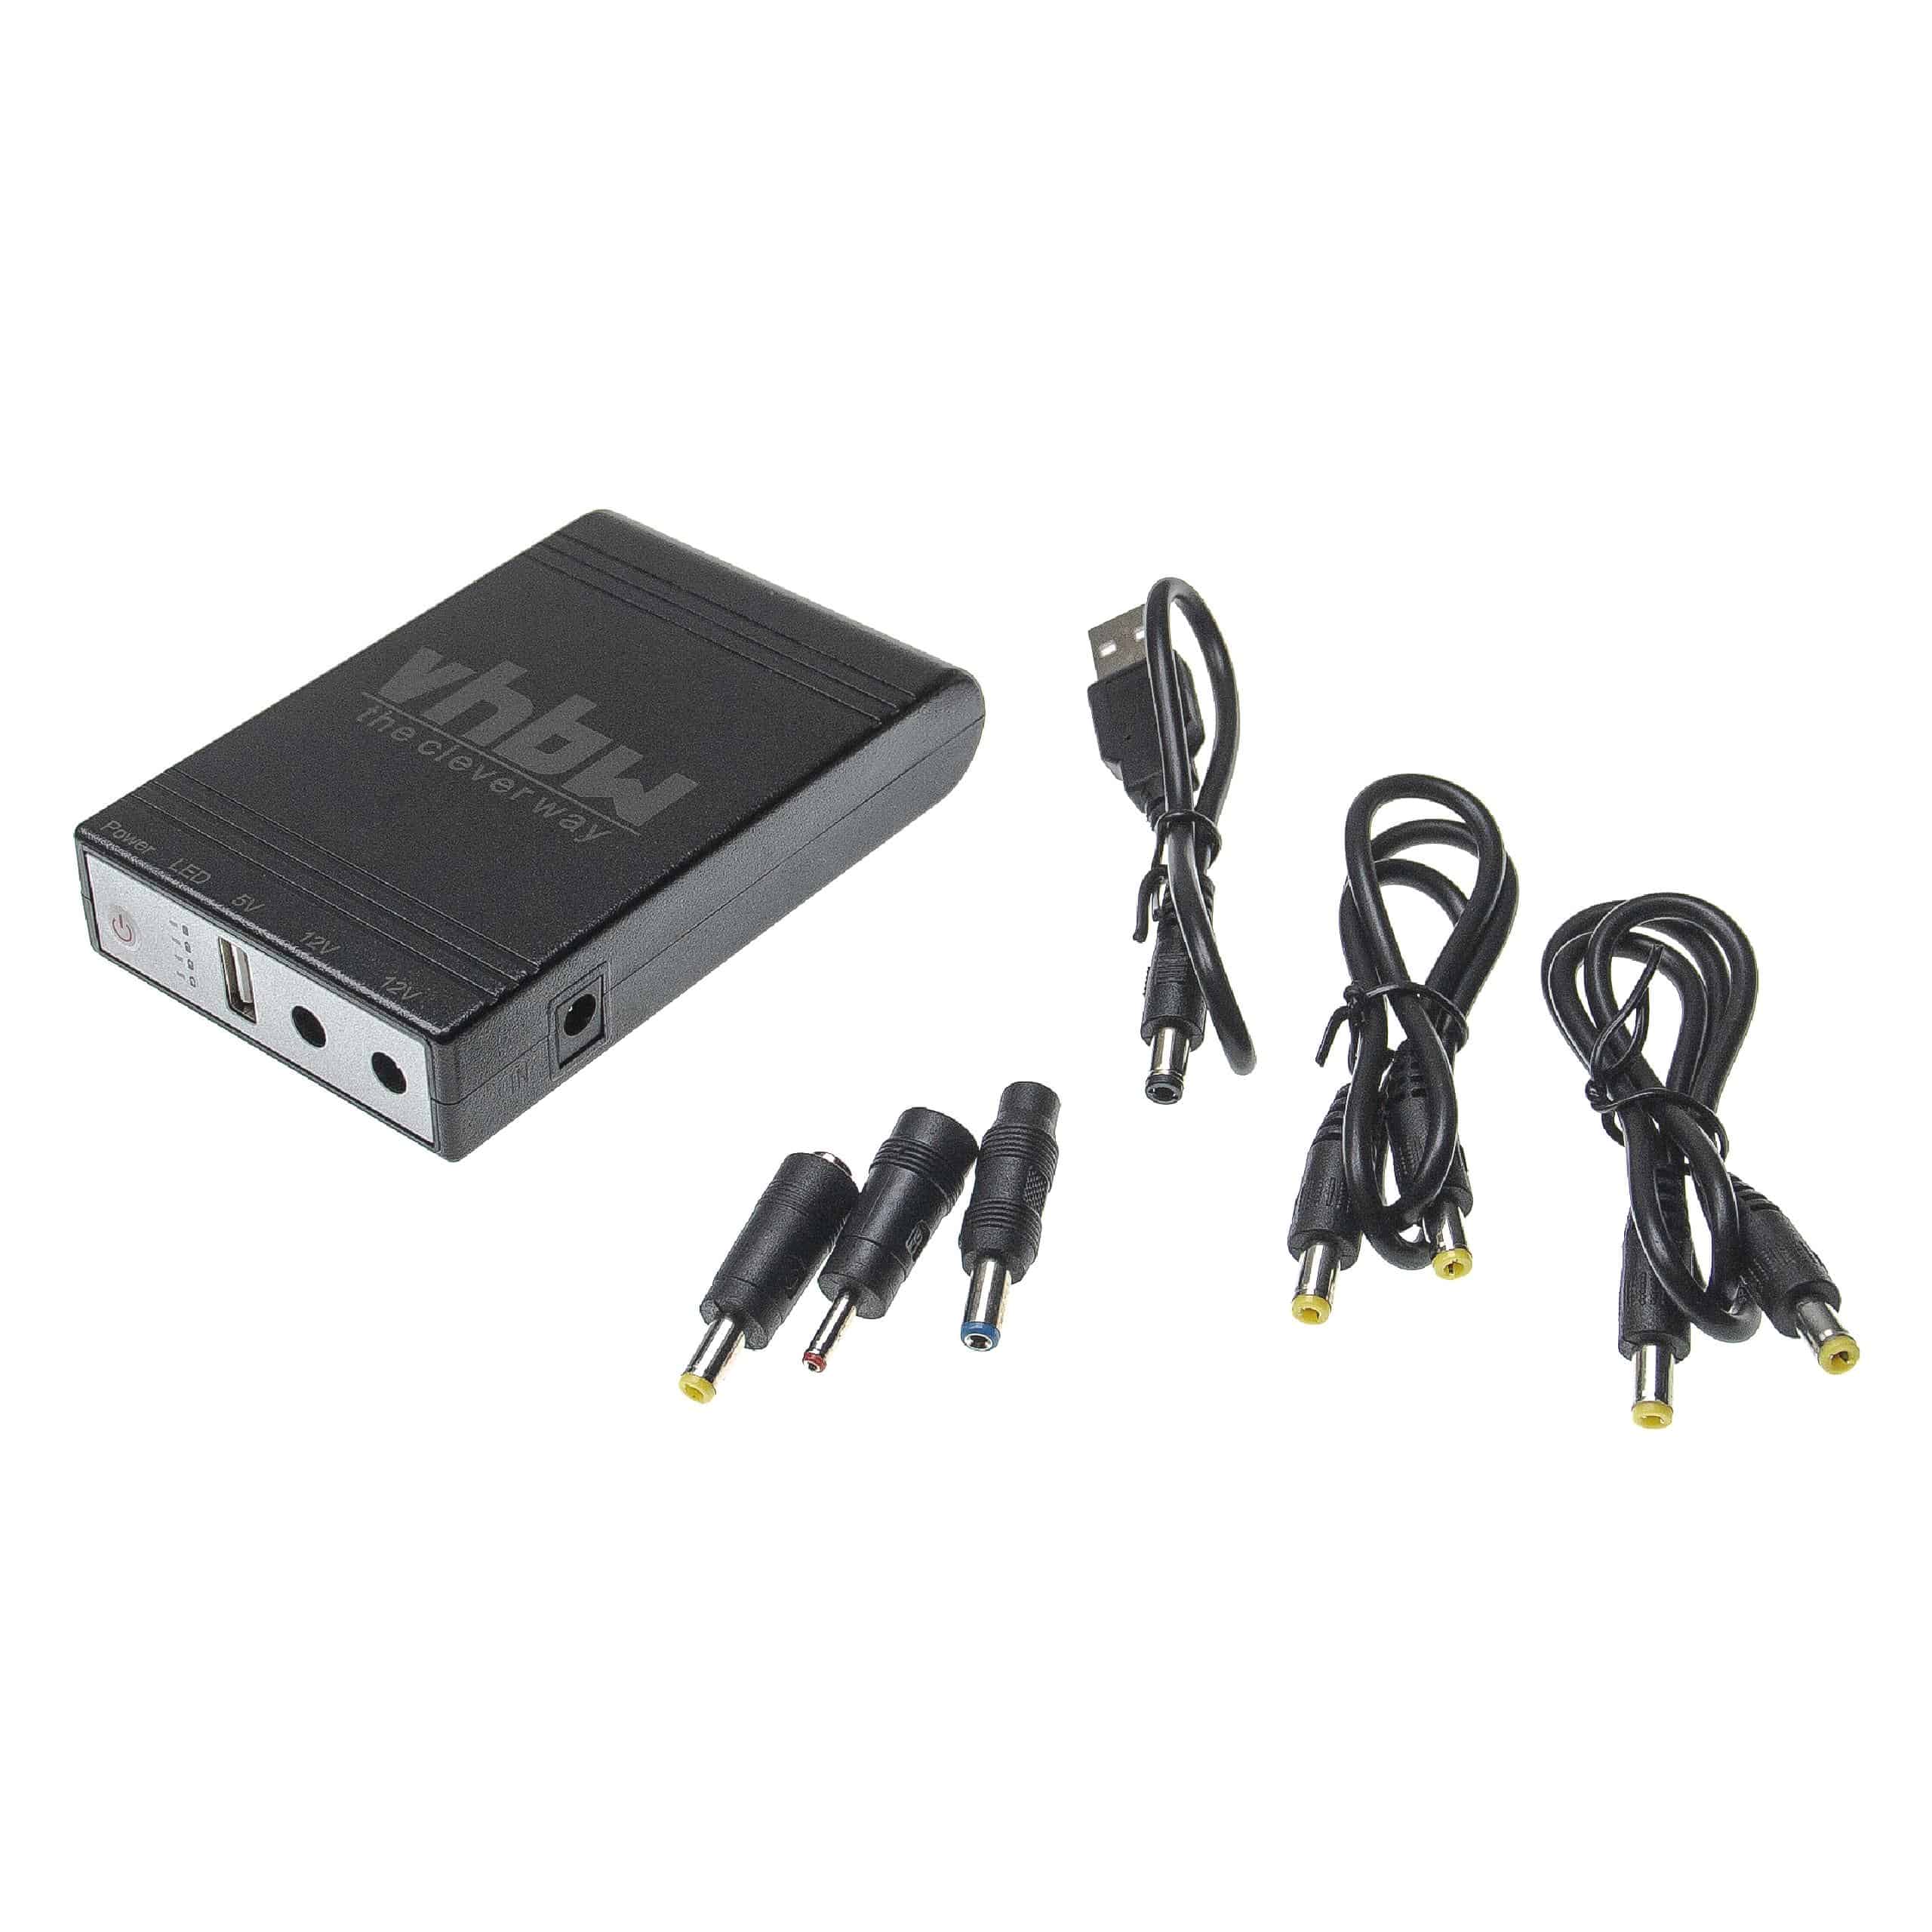 Zasilacz mini UPS do routera, komputera, kamery i innych urządzeń - USB 5 V / DC 12 V, 1,0 A